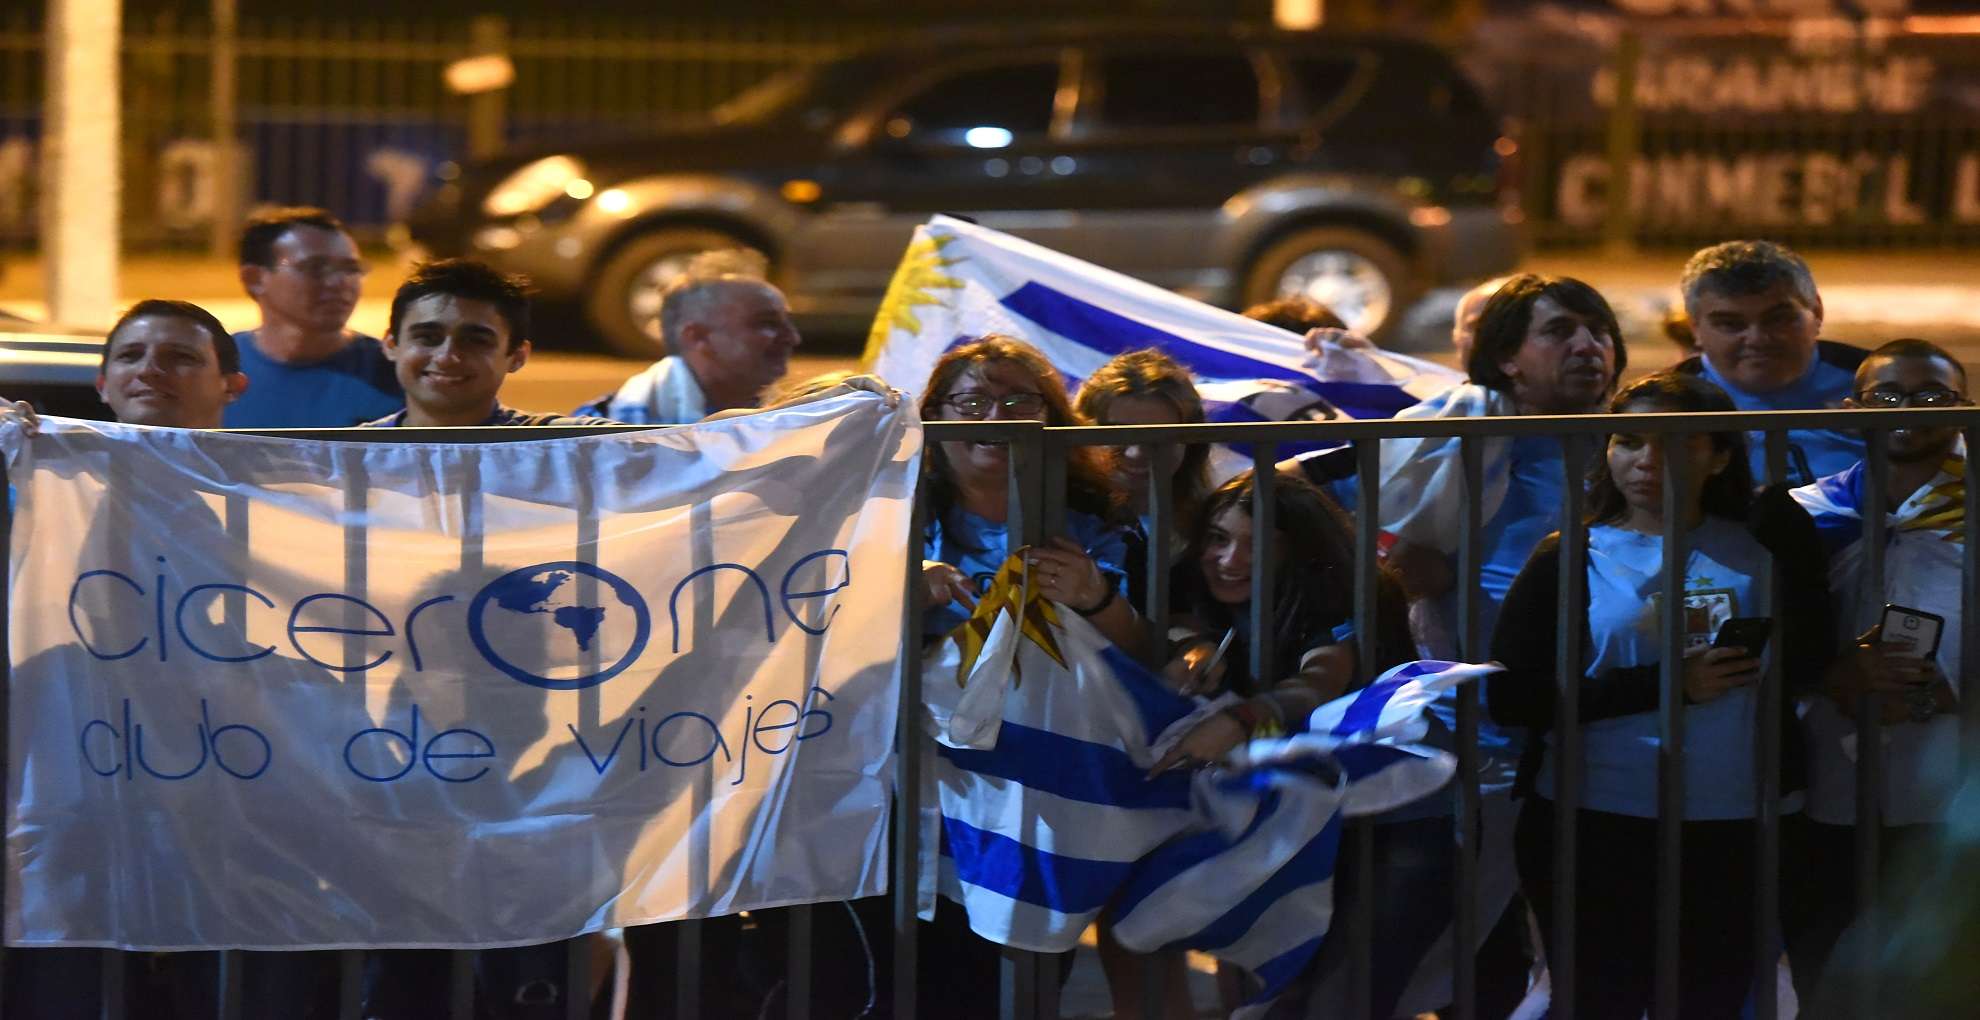 Uruguay Fans